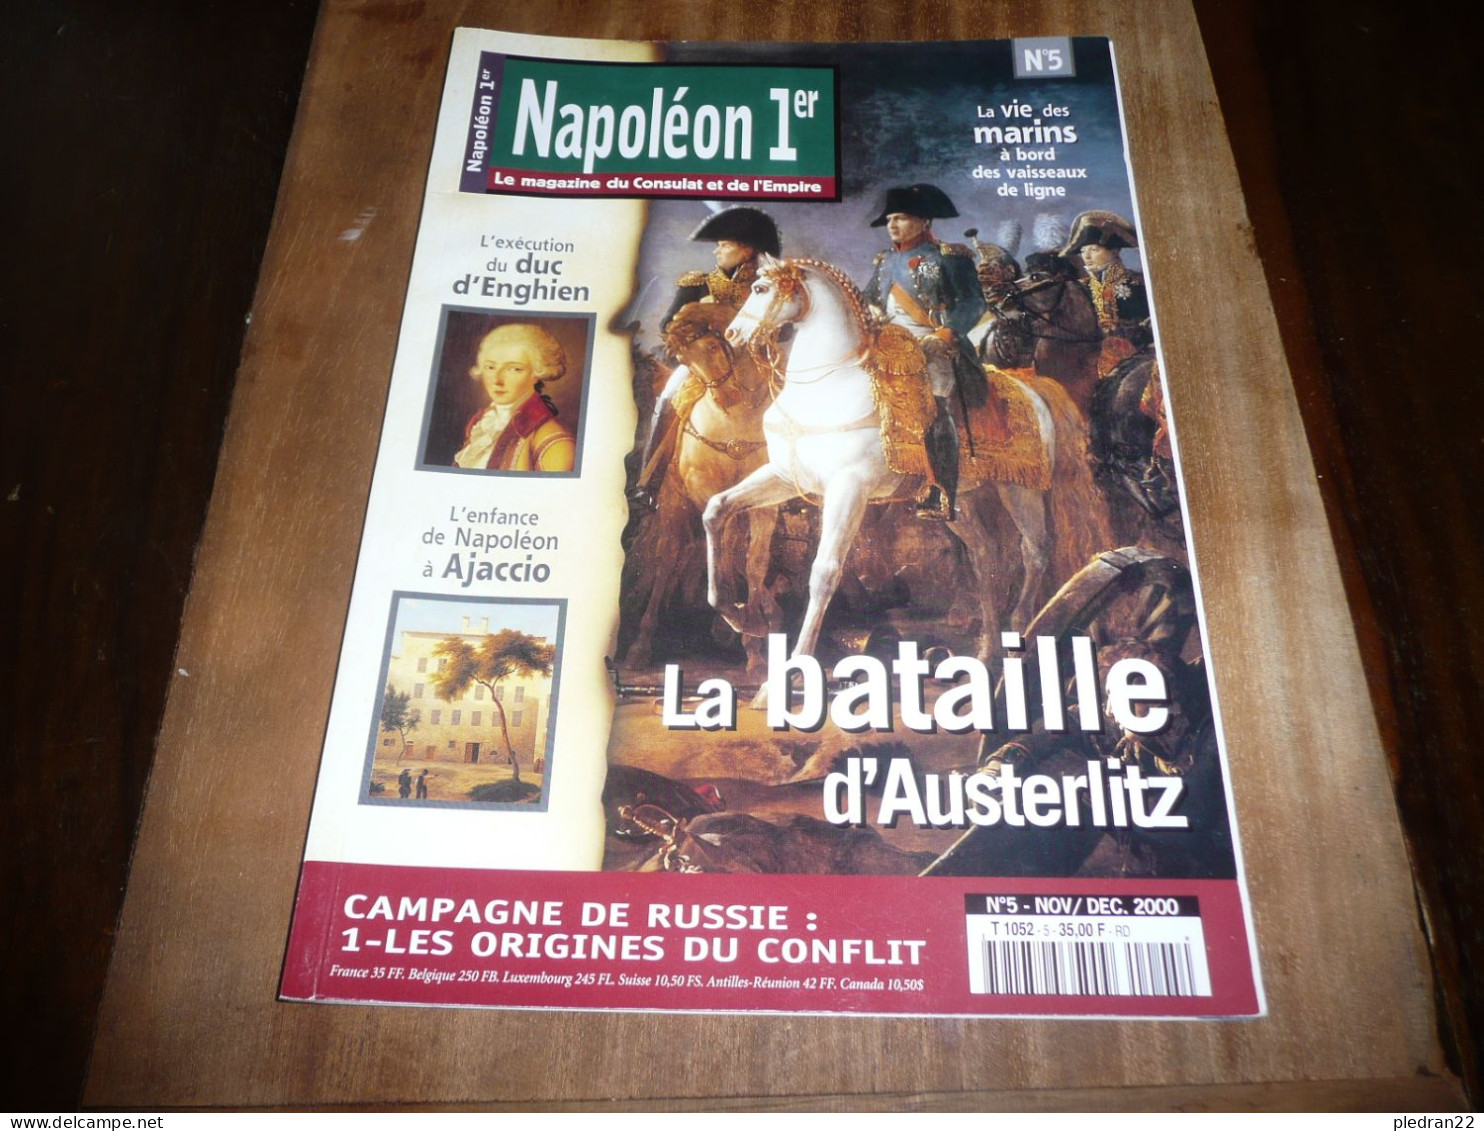 REVUE NAPOLEON 1er LE MAGAZINE DU CONSULAT ET DE L'EMPIRE N° 5 NOVEMBRE DECEMBRE 2000 - History